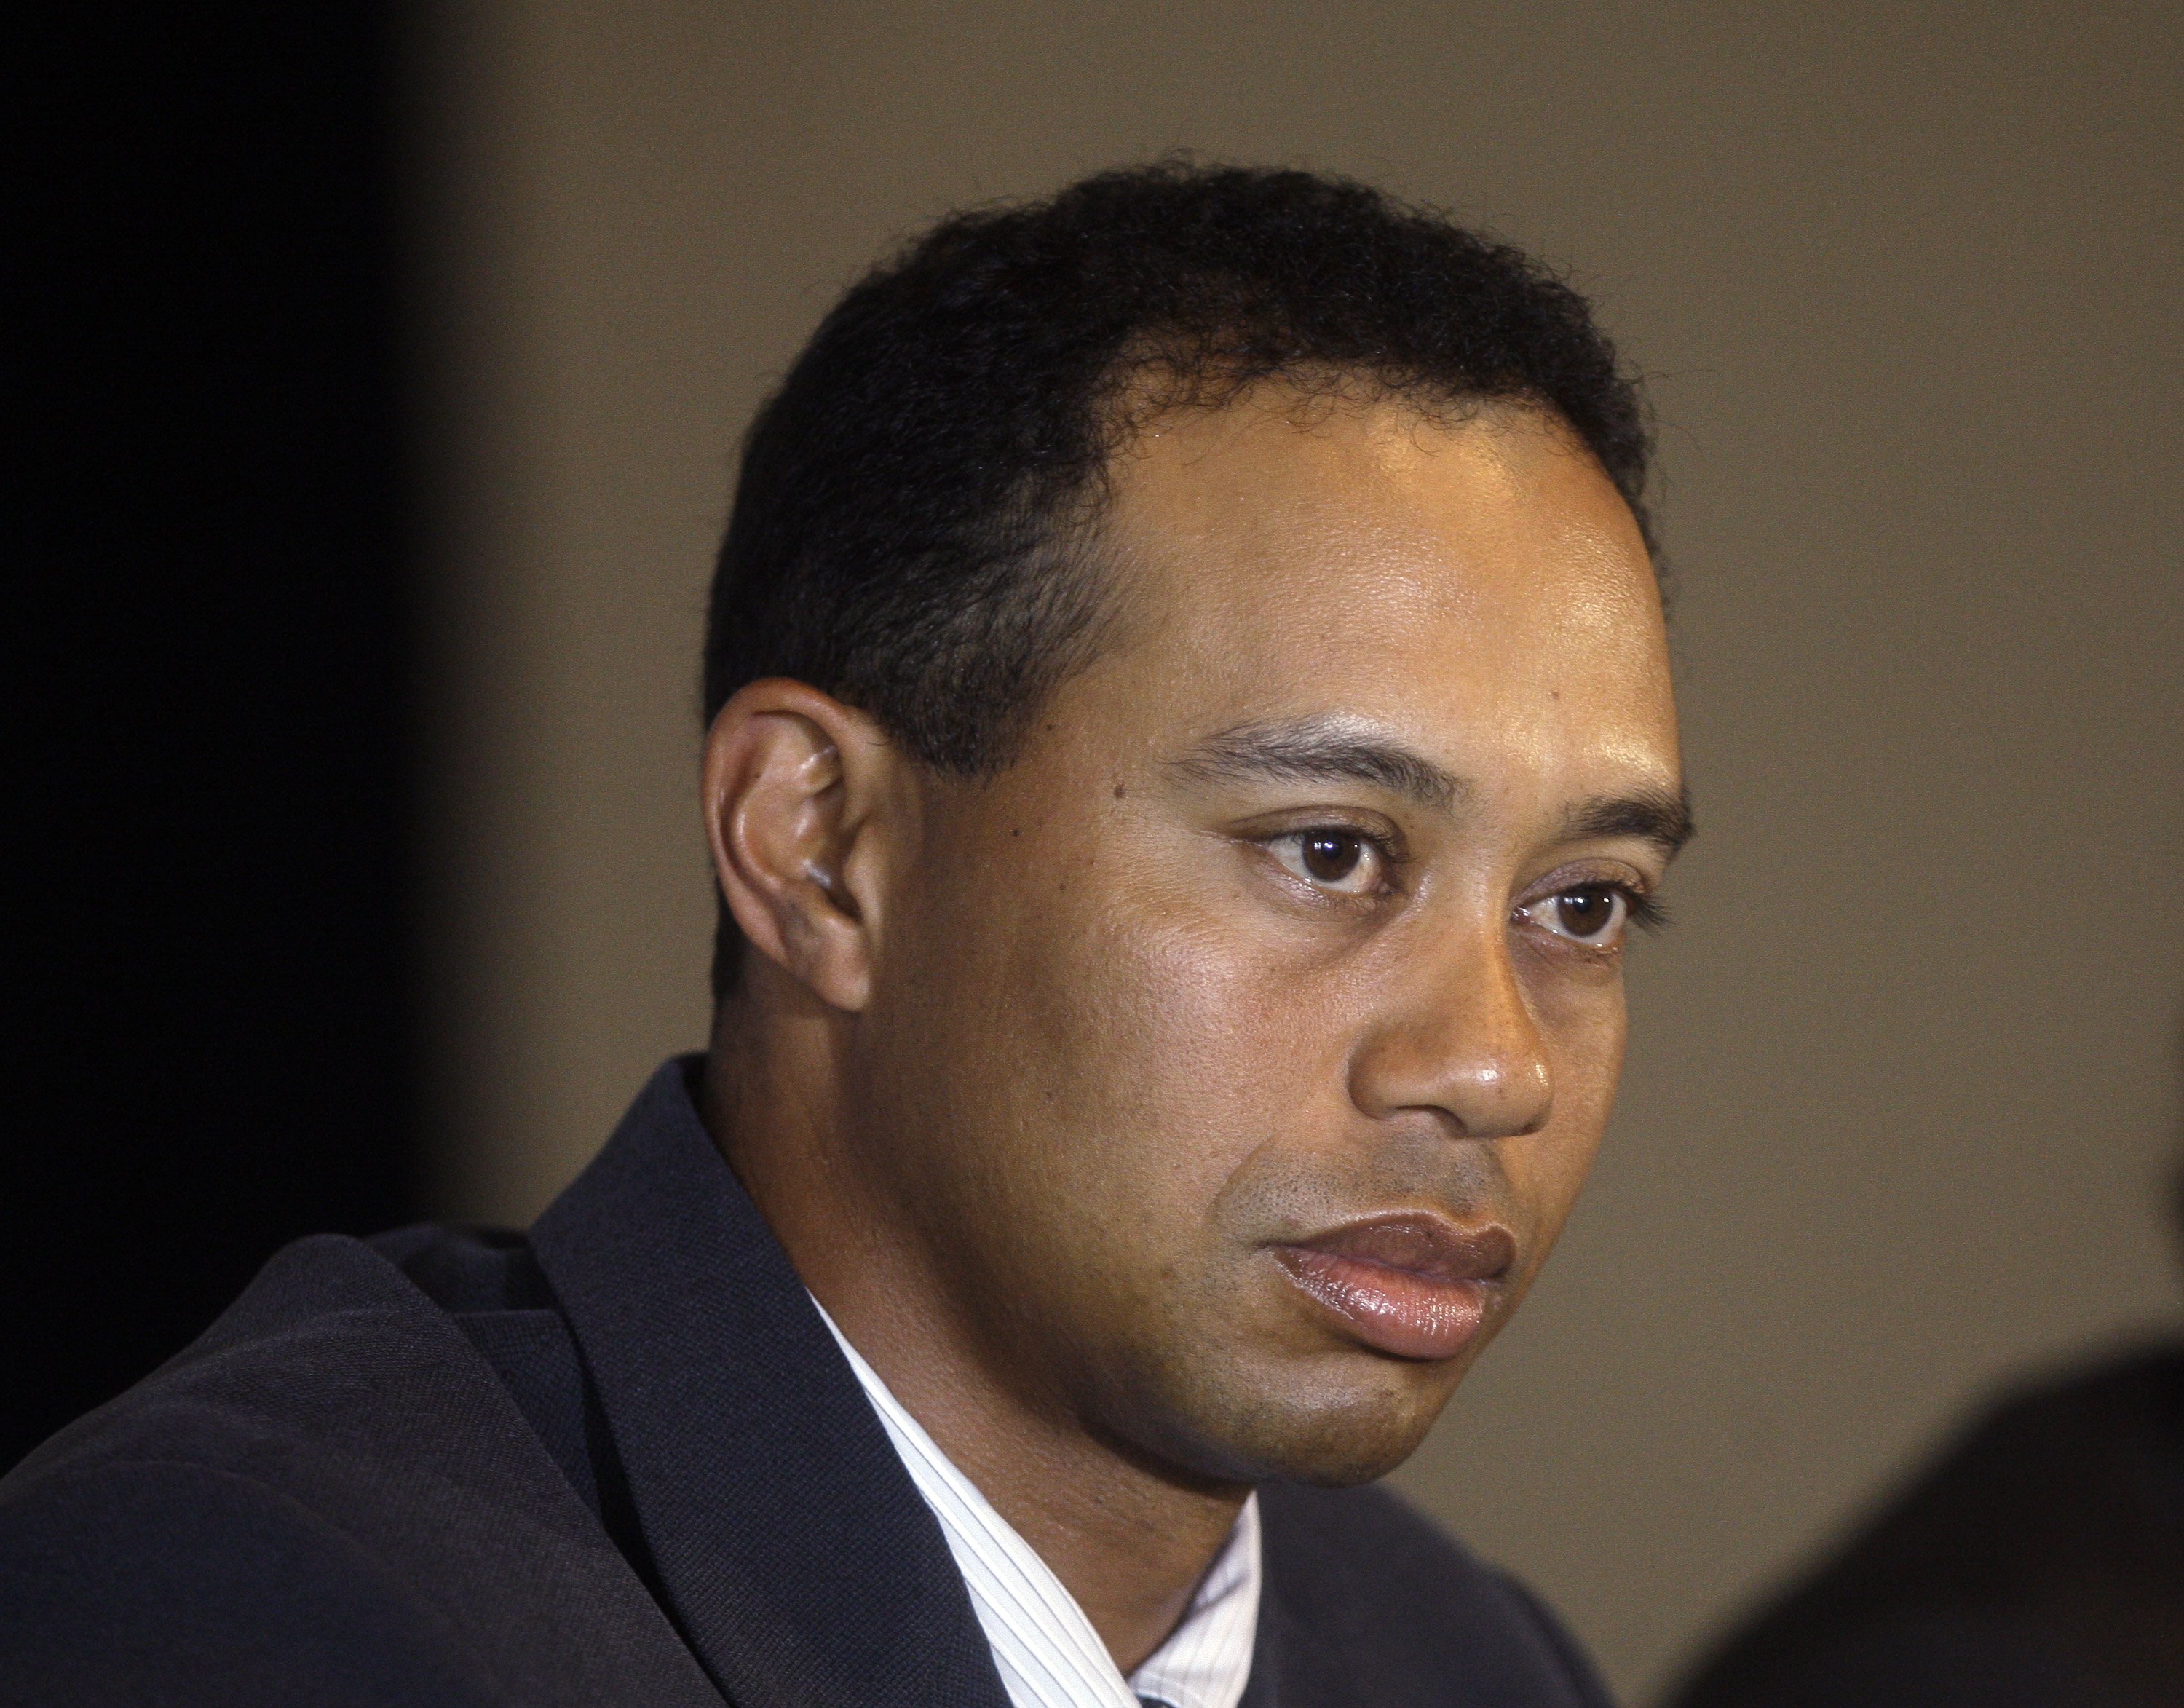 Tiger Woods ska ge sig på en comeback efter sexskandalerna och får presidentens stöd.